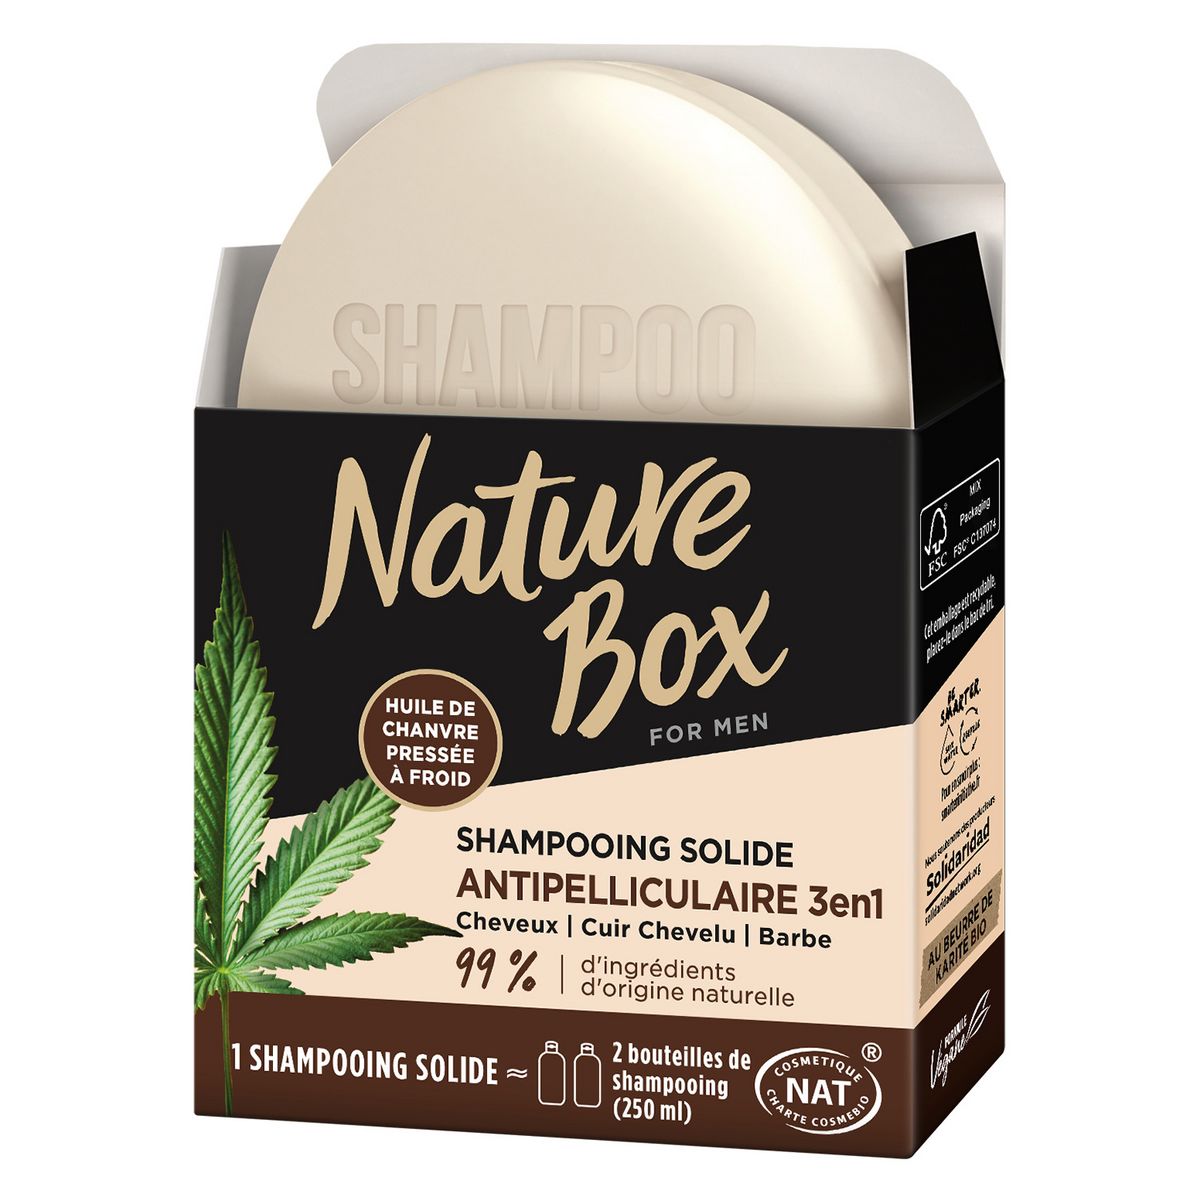 NATURE BOX Shampooing solide antipelliculaire 3en1 pour homme à l'huile de chanvre 85g